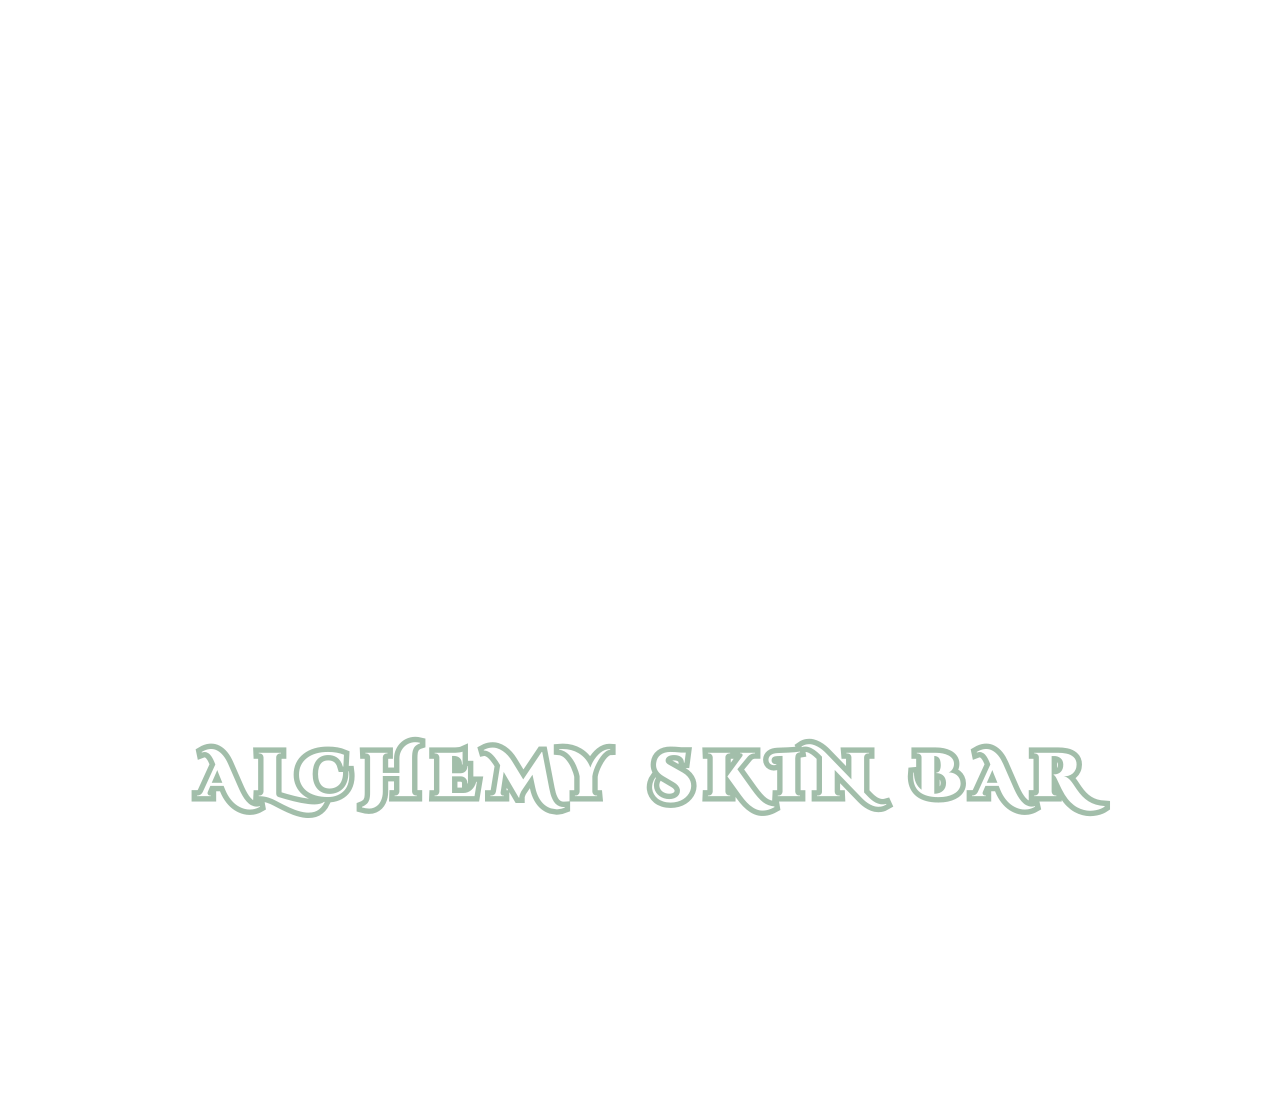 Alchemy skin bar's logo